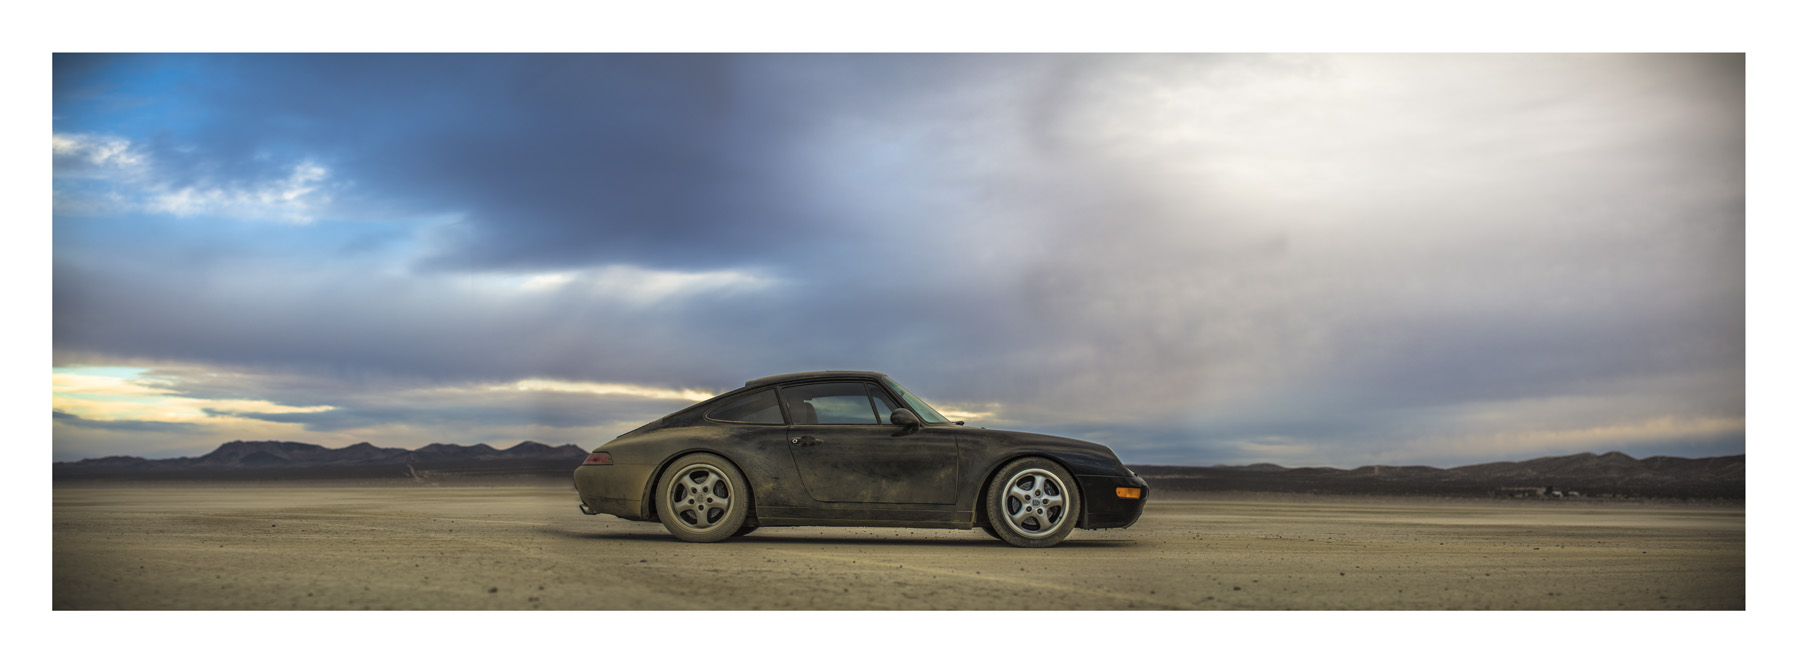 Porsche993_wide_desertlakebed_opt